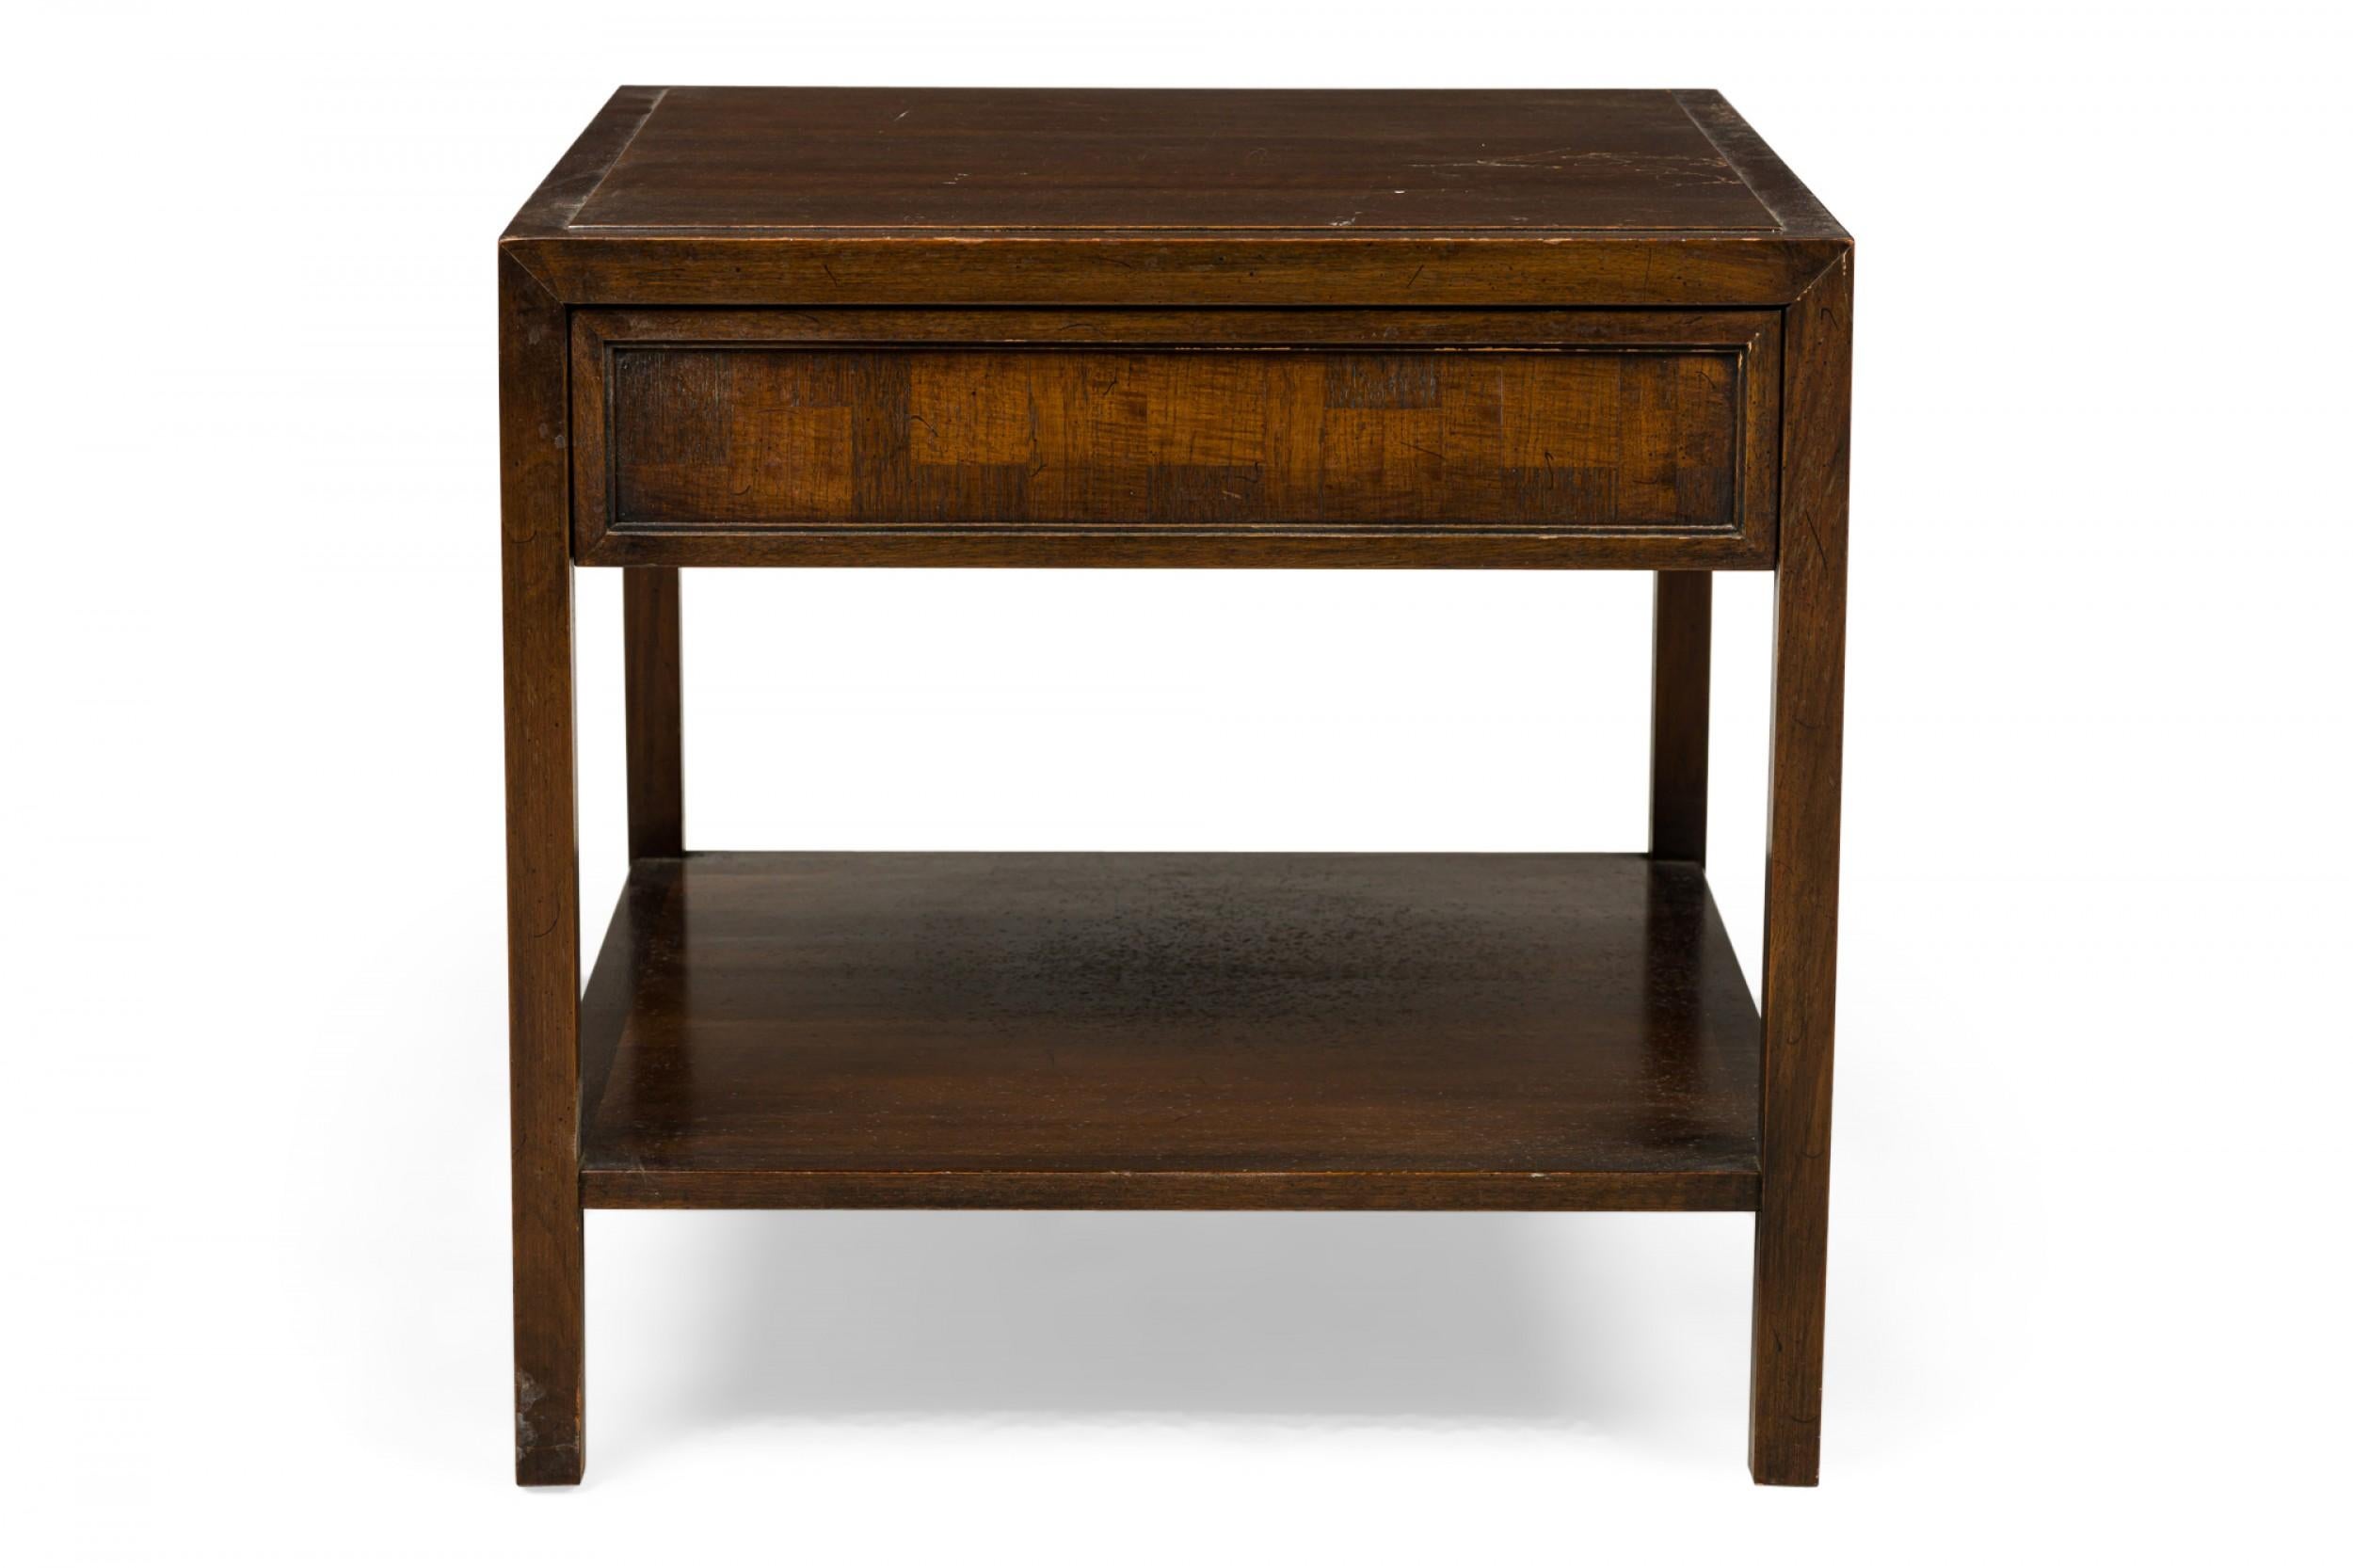 PAIRE de tables d'appoint rectangulaires en bois du milieu du siècle dernier, avec un seul tiroir et une étagère inférieure. (JOHN STUART)(PRIX PAR PAIRE)
